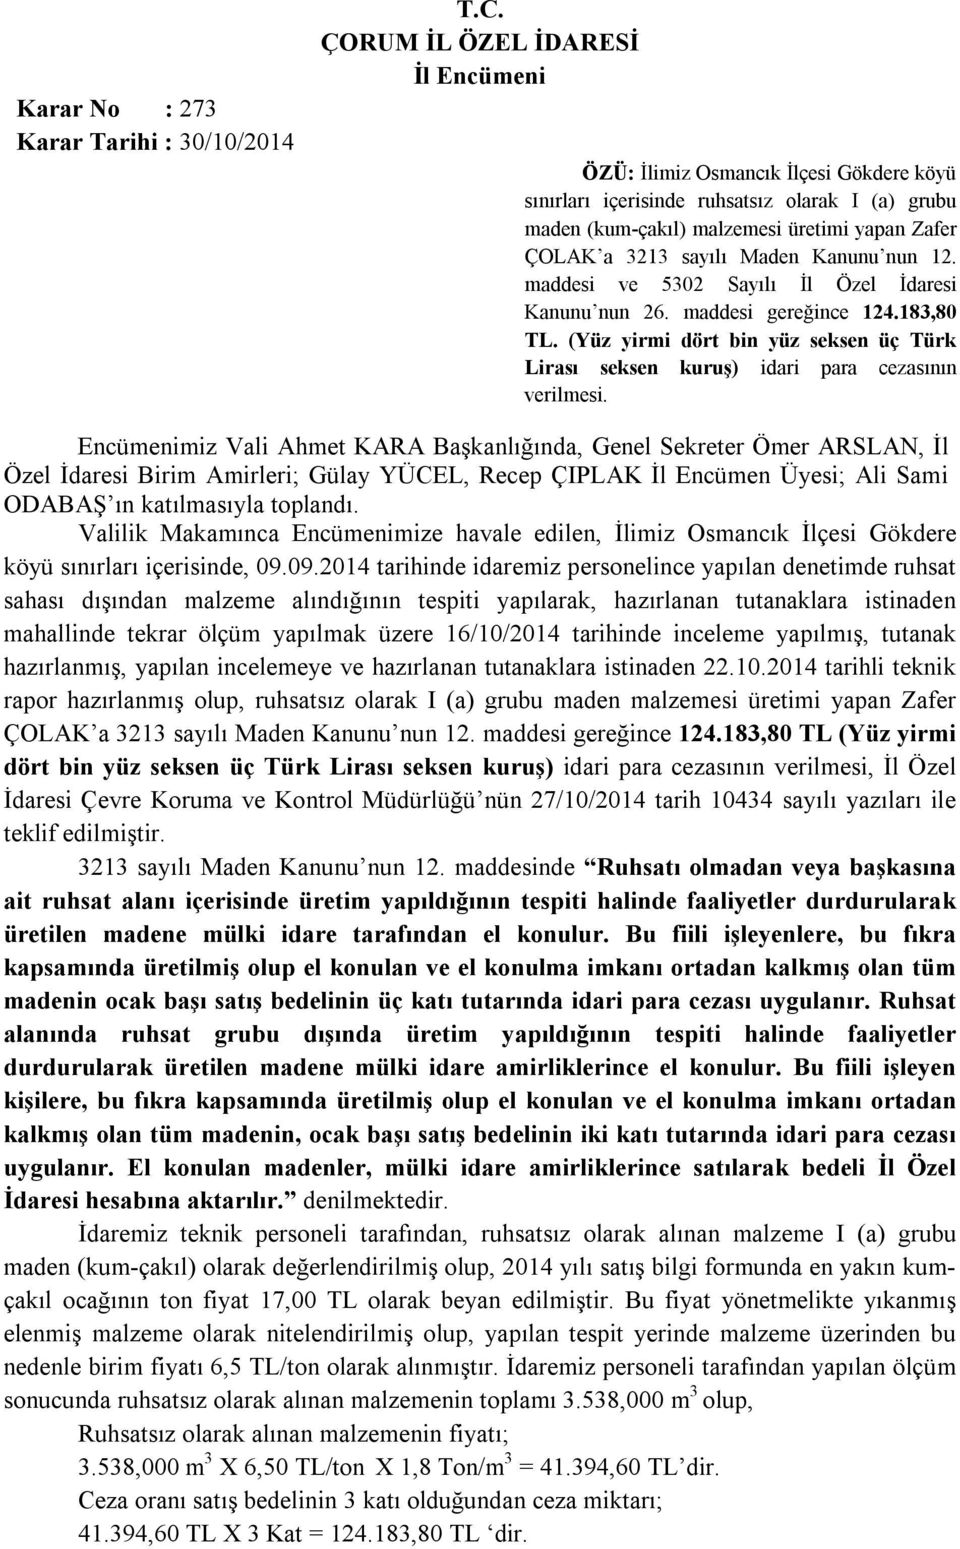 maddesi ve 5302 Sayılı İl Özel İdaresi Kanunu nun 26. maddesi gereğince 124.183,80 TL. (Yüz yirmi dört bin yüz seksen üç Türk Lirası seksen kuruş) idari para cezasının verilmesi.